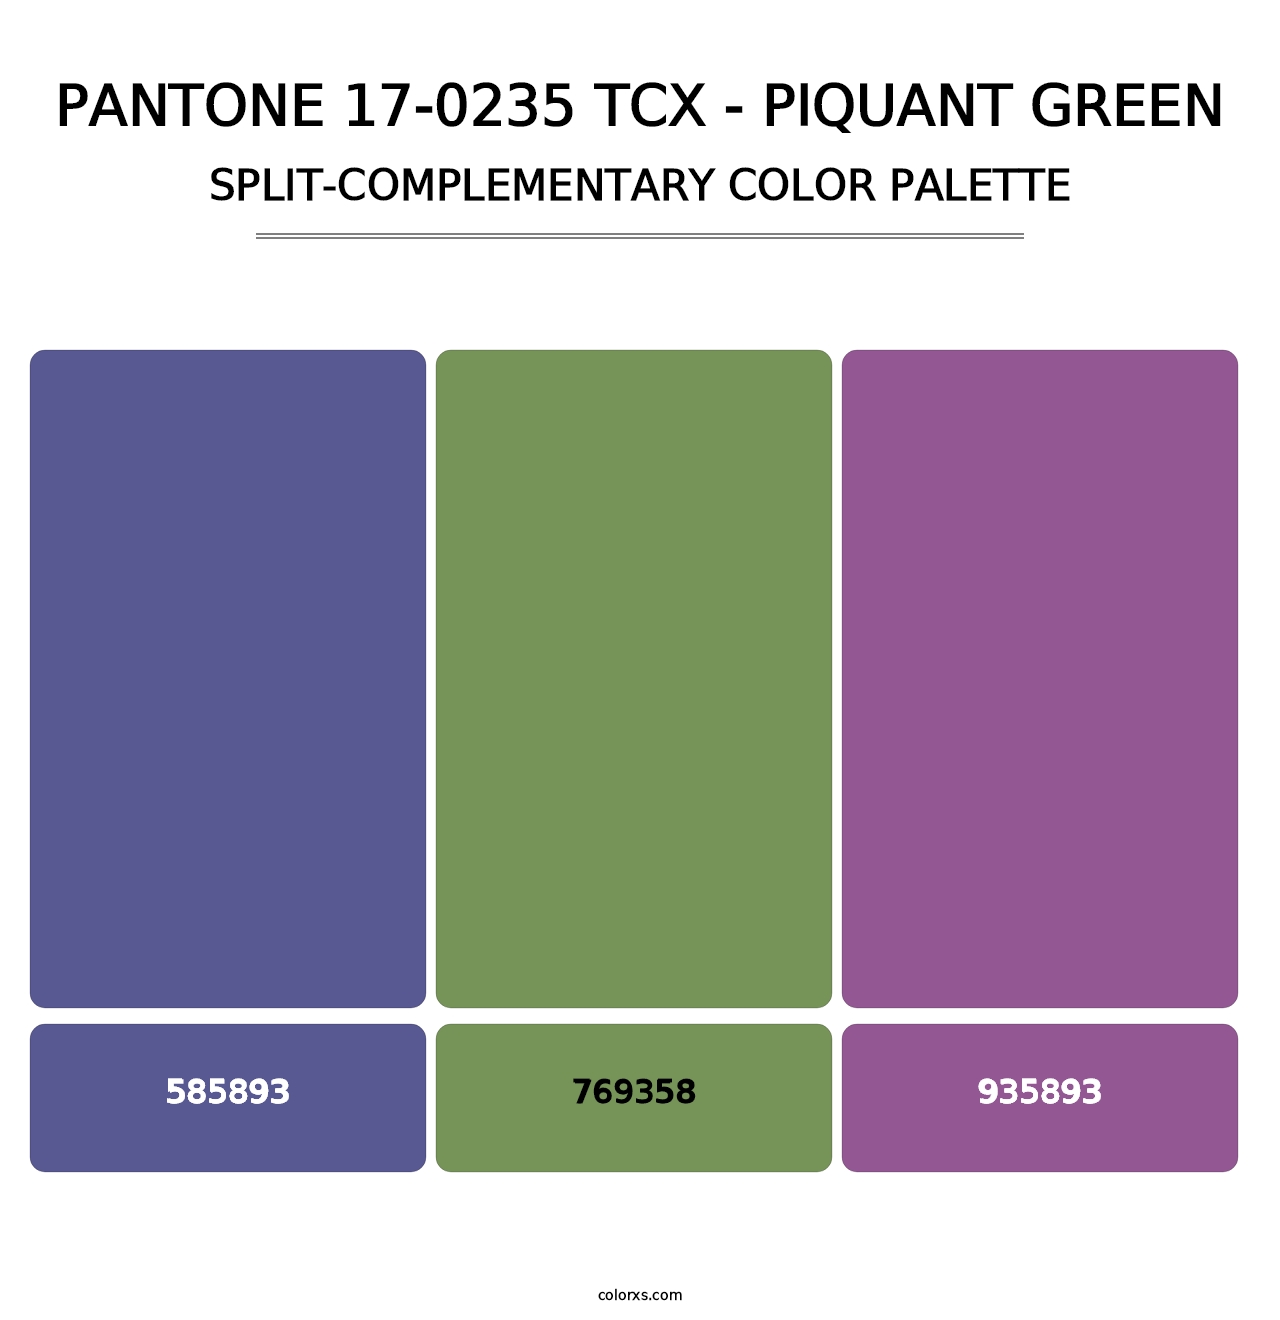 PANTONE 17-0235 TCX - Piquant Green - Split-Complementary Color Palette